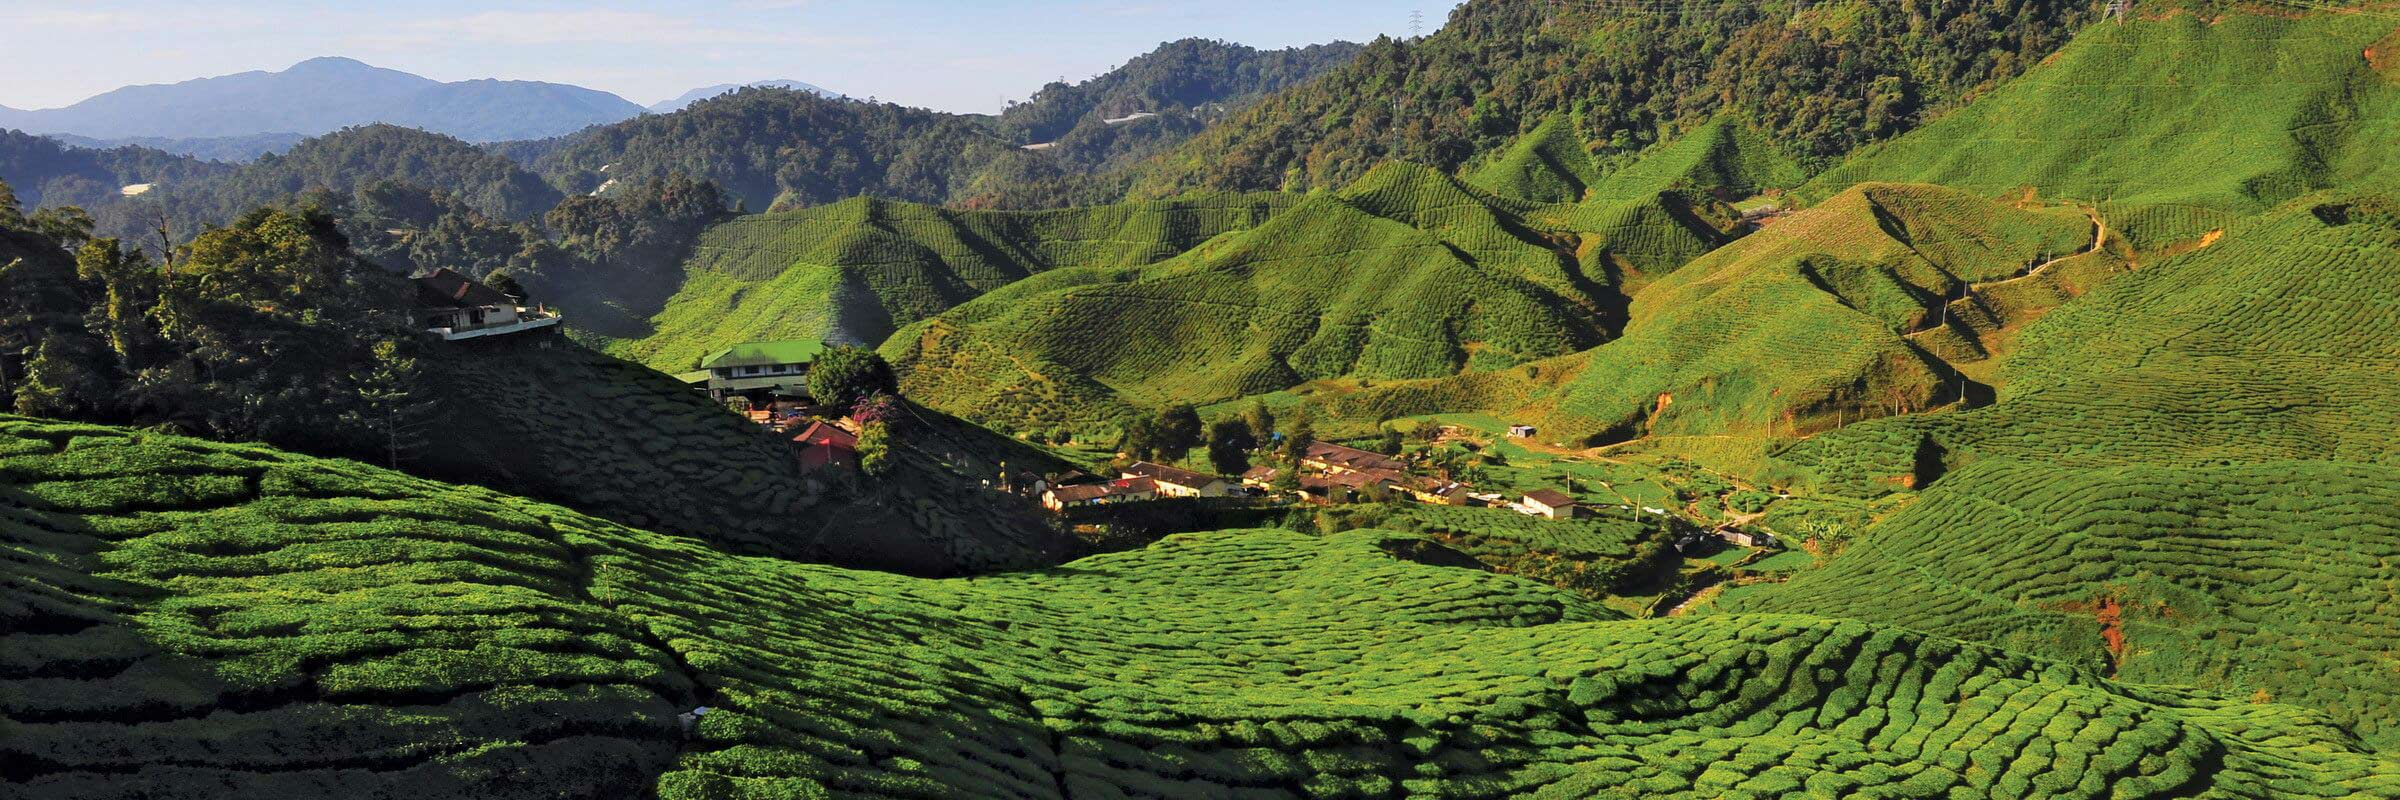 Aufgrund der kühlen Witterung gedeihen in den Cameron Highlands andere Pflanzen als in der malaysischen Ebene, vor allem wird aber Tee angebaut.